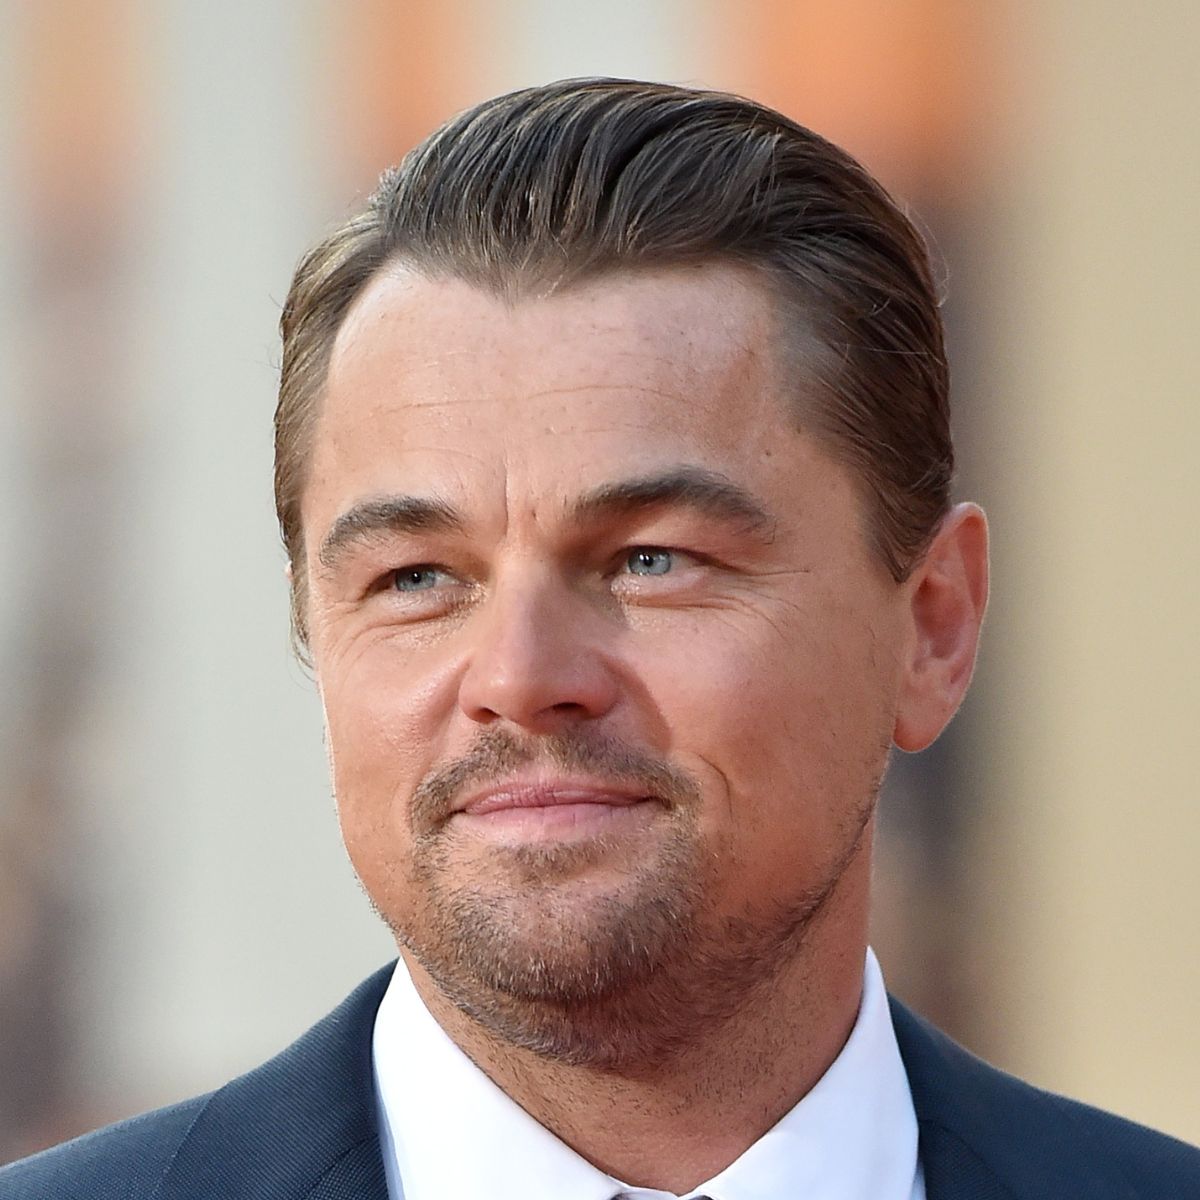 PHOTOS] Leonardo DiCaprio's Hair Evolution